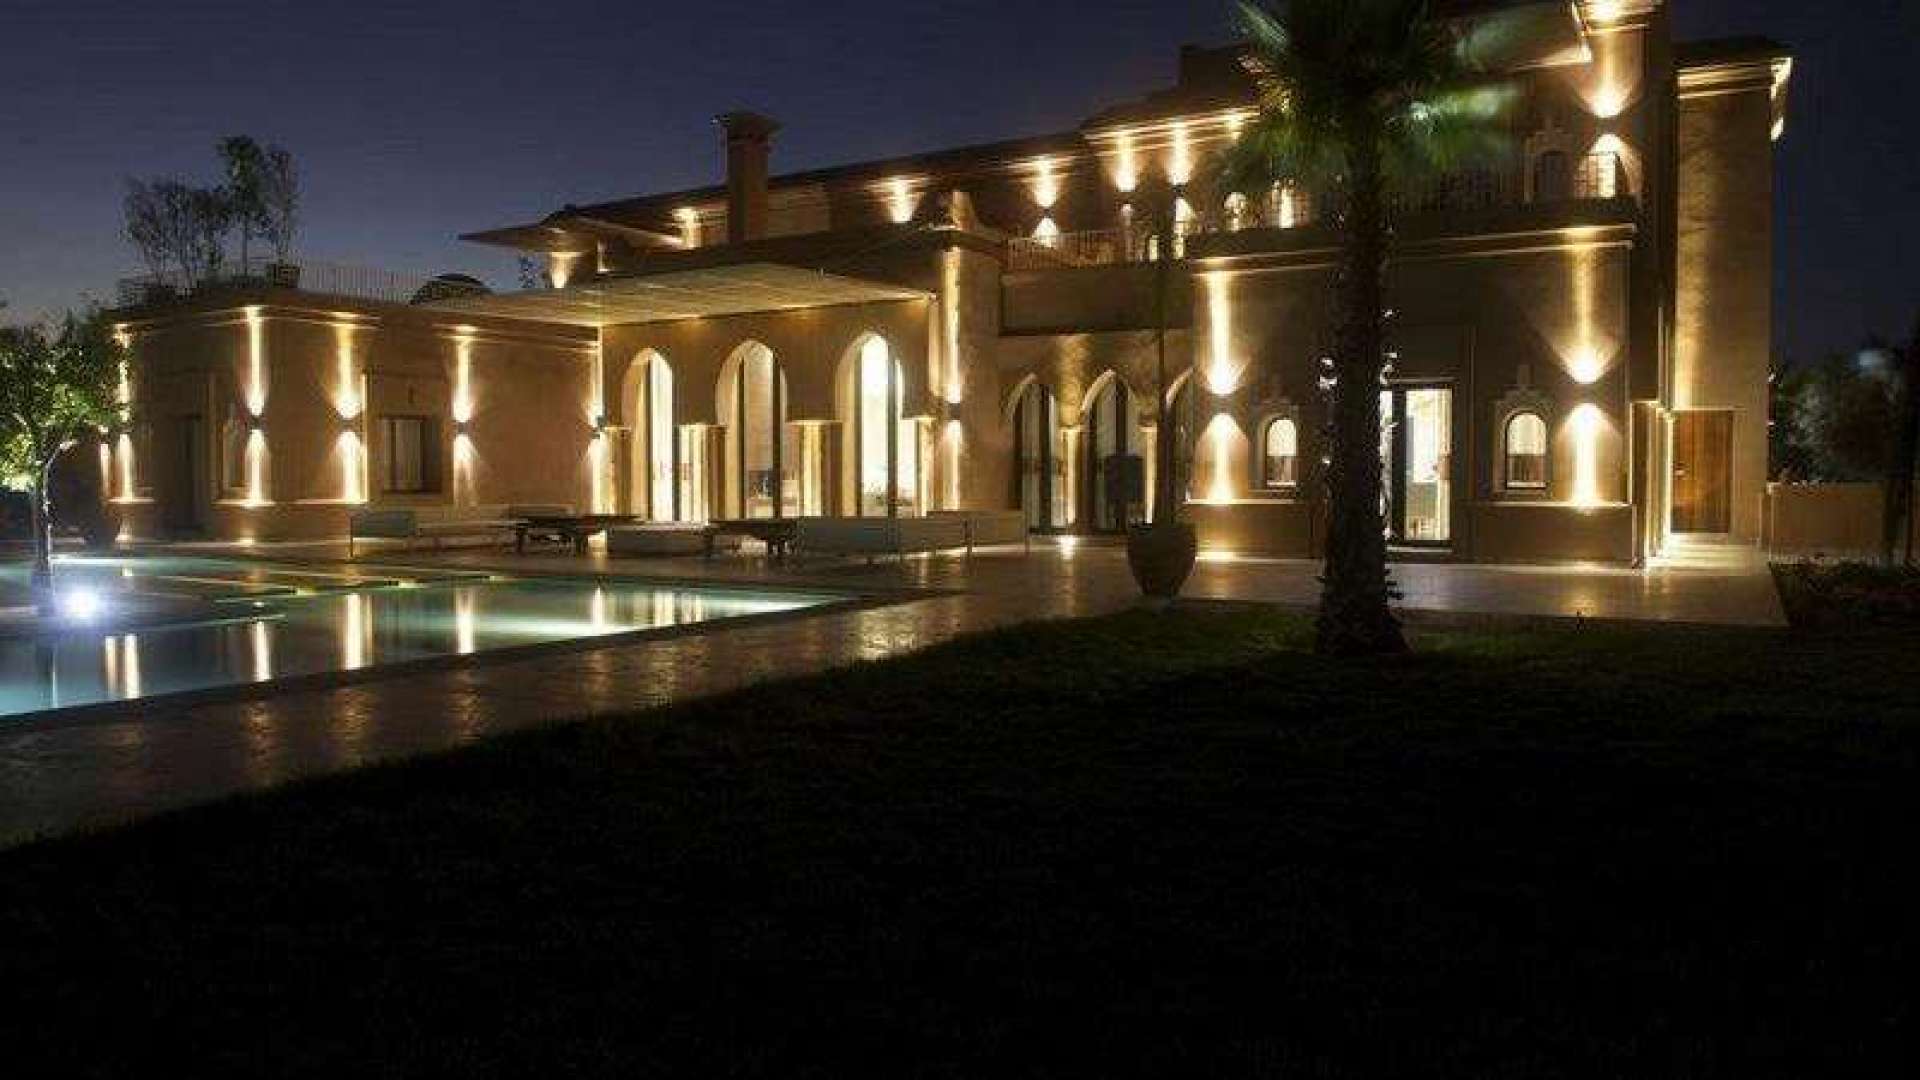 Location de vacances,Villa,Propriété privée de 6 suites avec piscine chauffée sur 1 hectare de jardin ,Marrakech,Bab Atlas